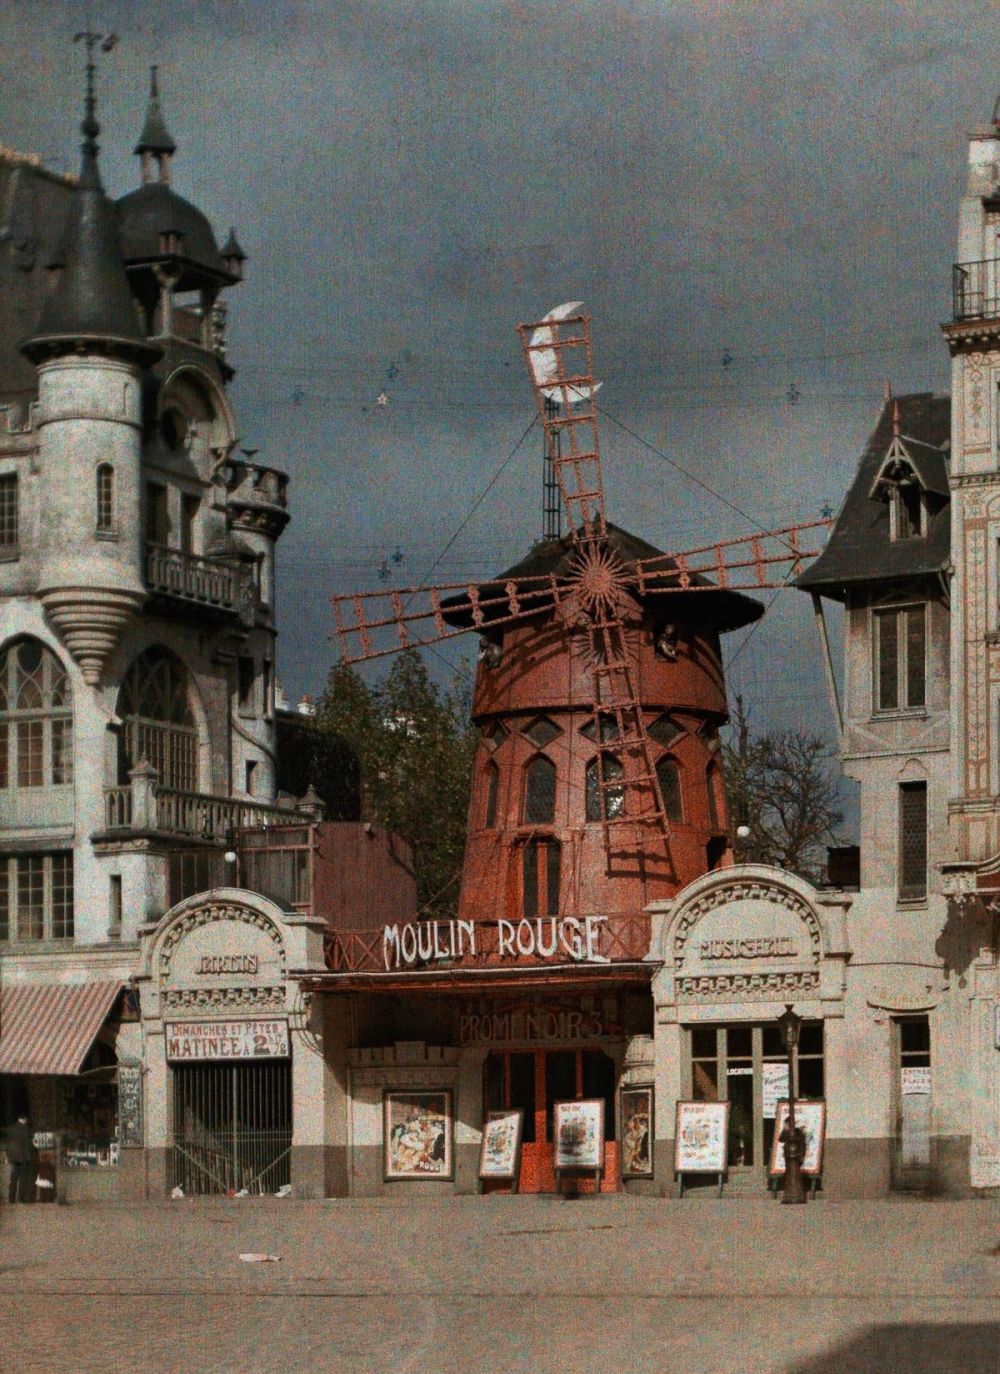 14 Foto langka keadaan Paris setelah Perang Dunia I